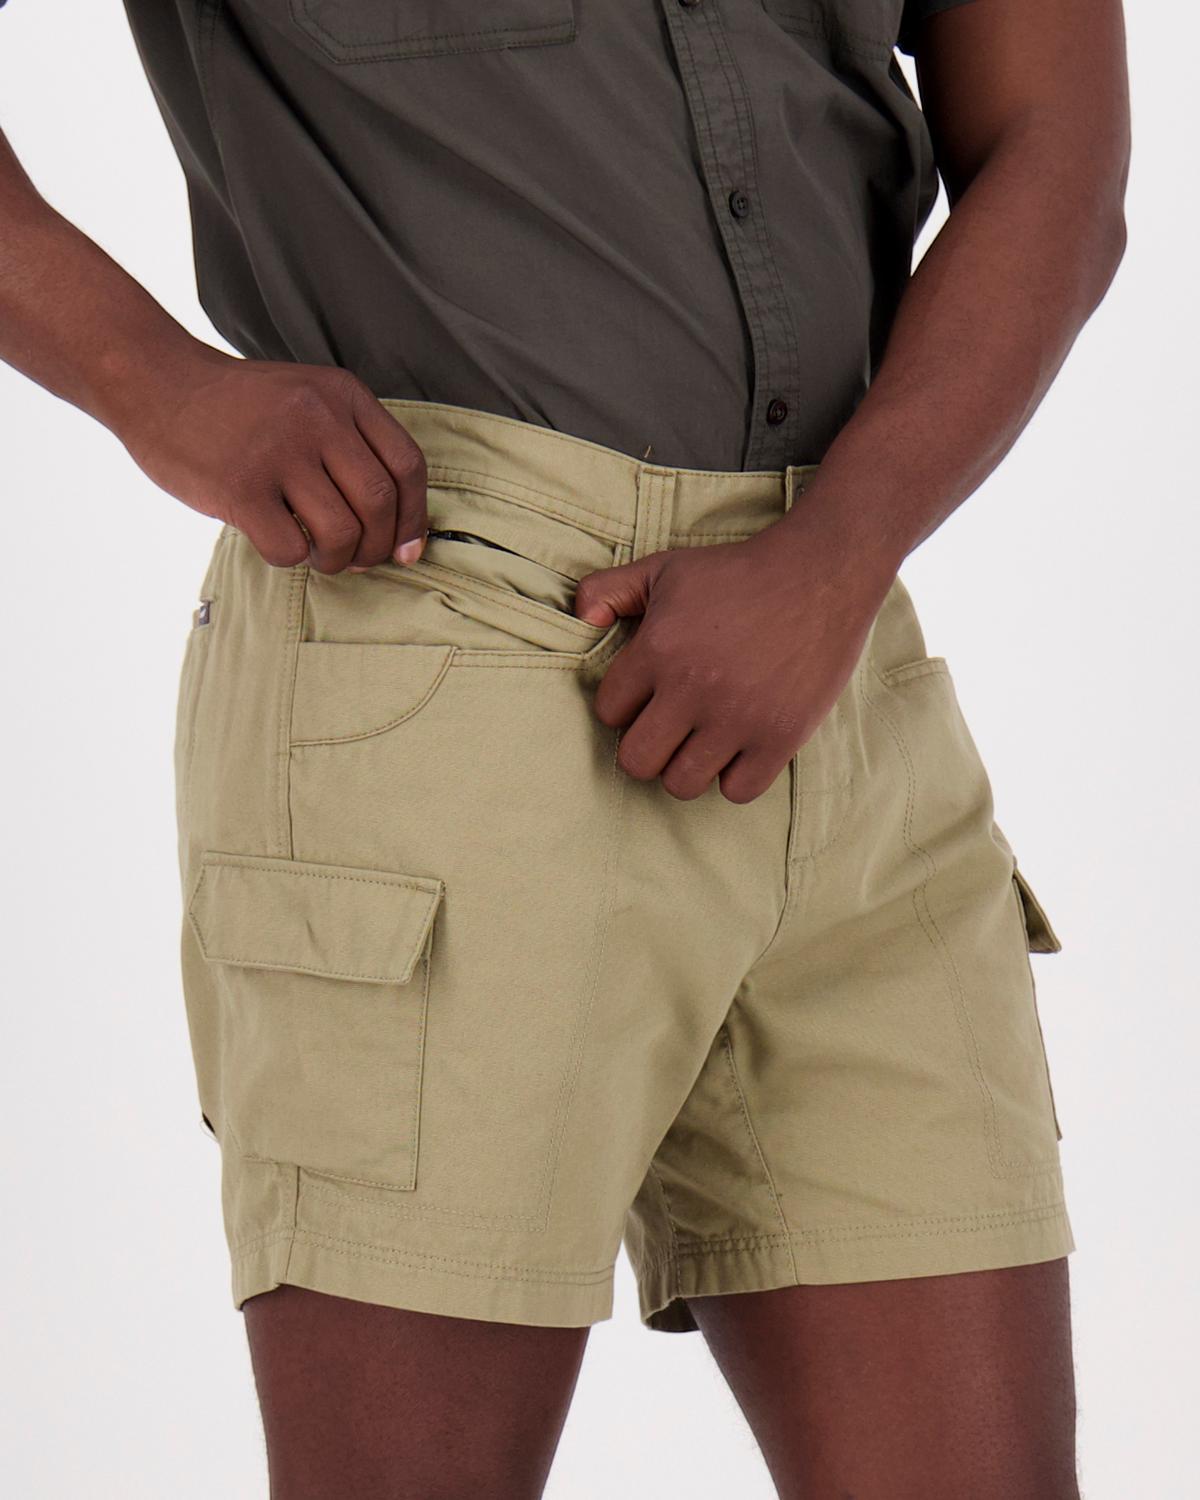 K-Way Elements Men’s Safari Shorts Extended Sizes -  Khaki